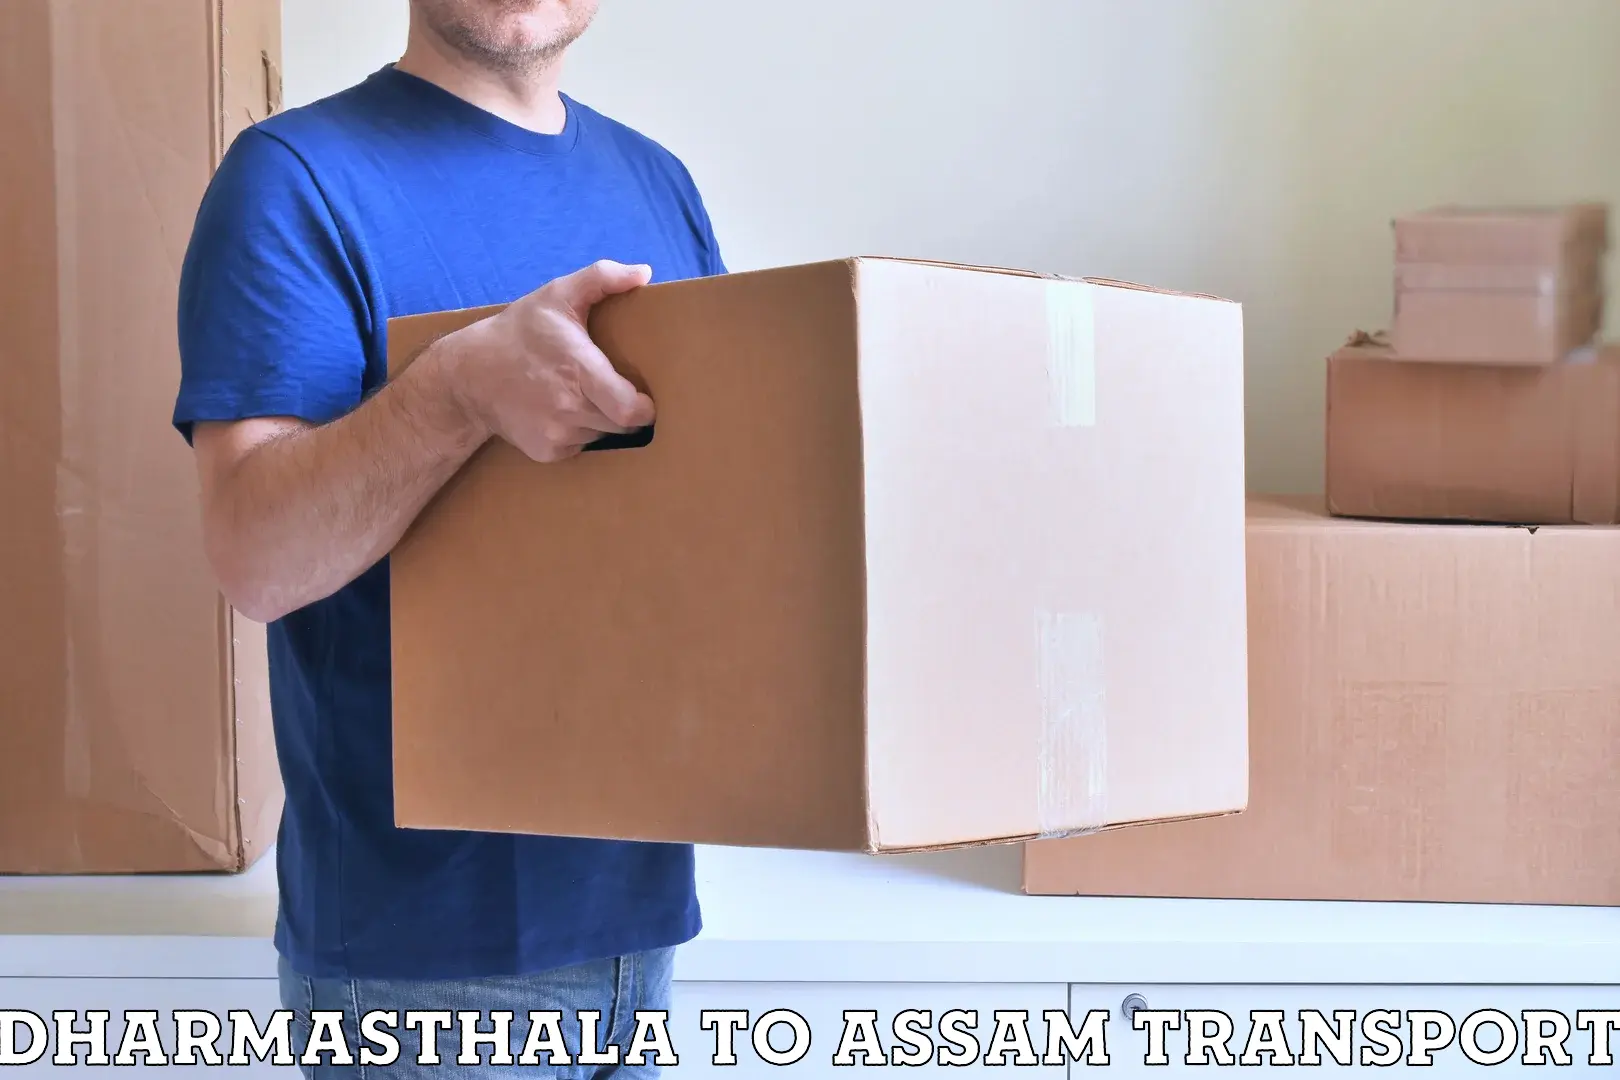 Furniture transport service Dharmasthala to Lalapur Hailakandi